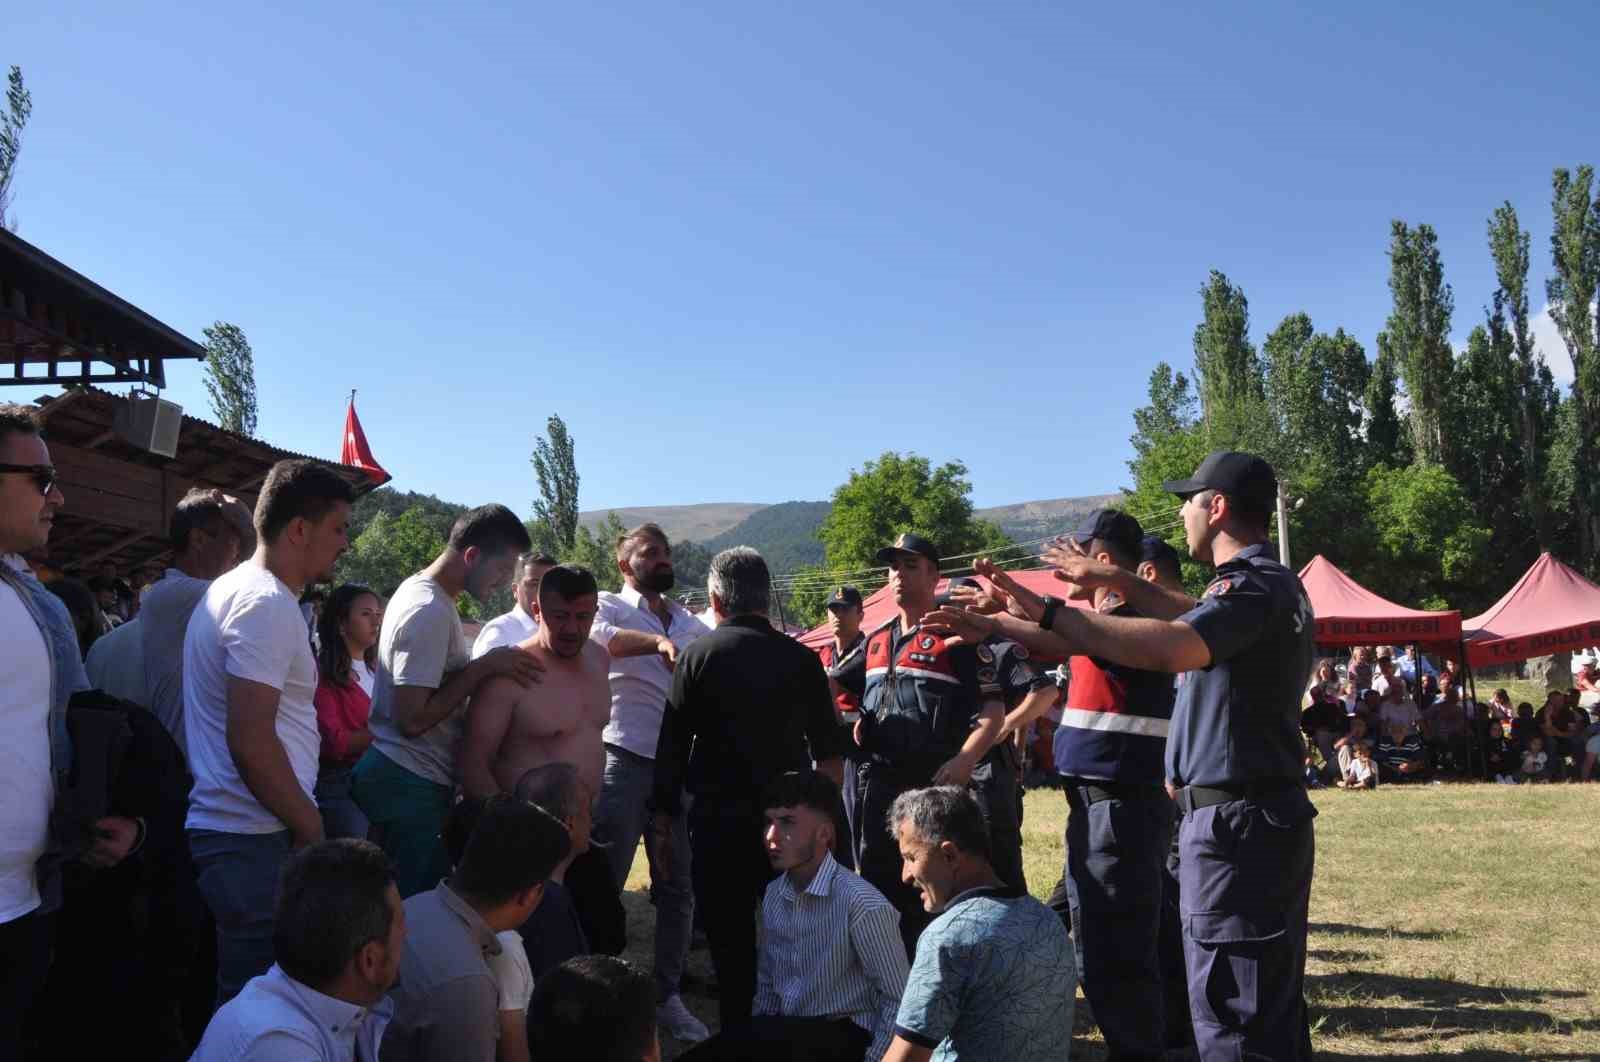 Hacet bayramında ipler gerildi: Jandarma kavgayı önledi
